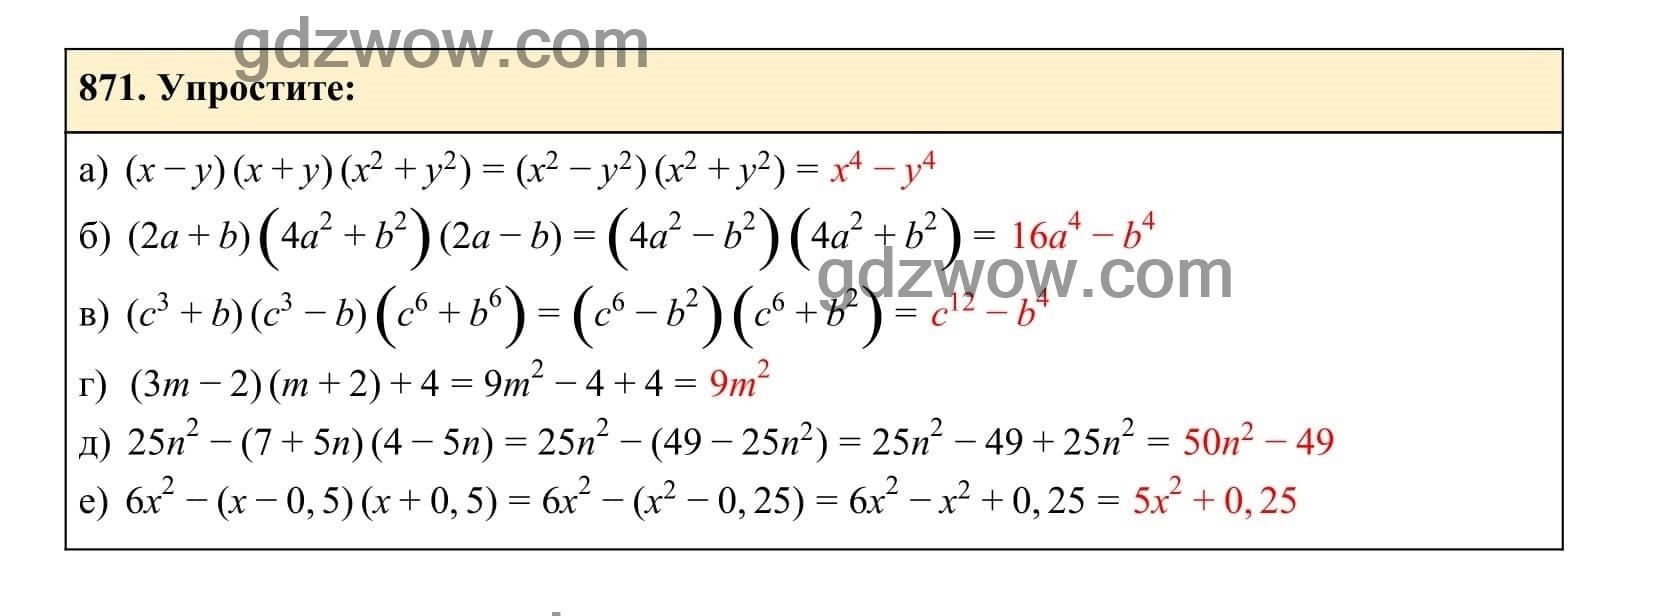 Упражнение 871 - ГДЗ по Алгебре 7 класс Учебник Макарычев (решебник) - GDZwow